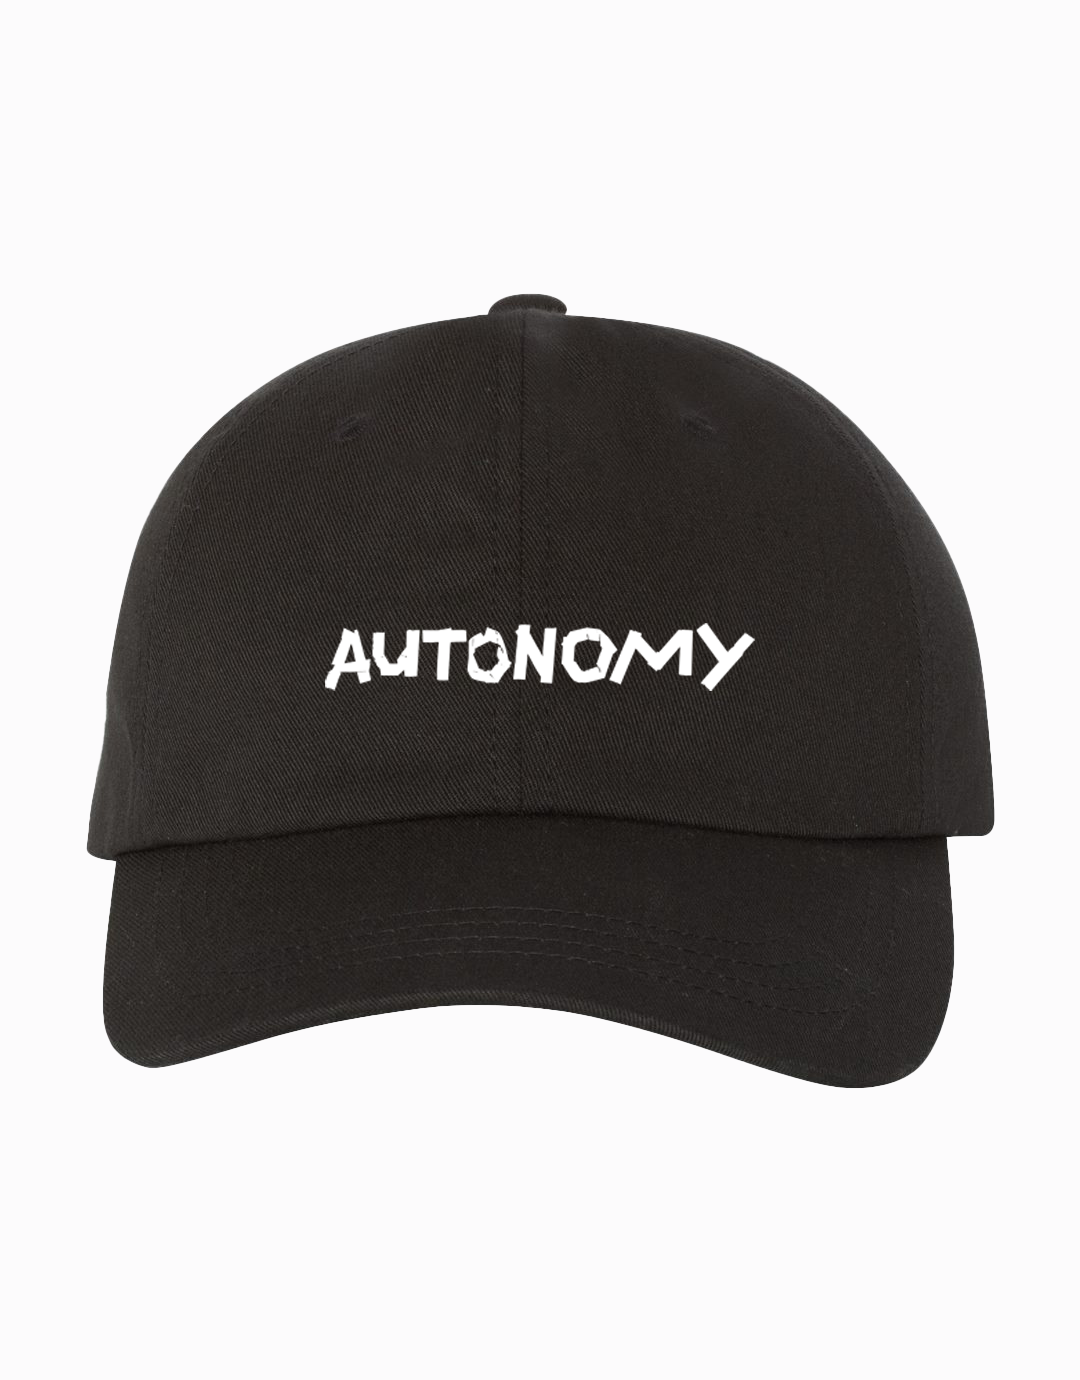 Autonomy Hat